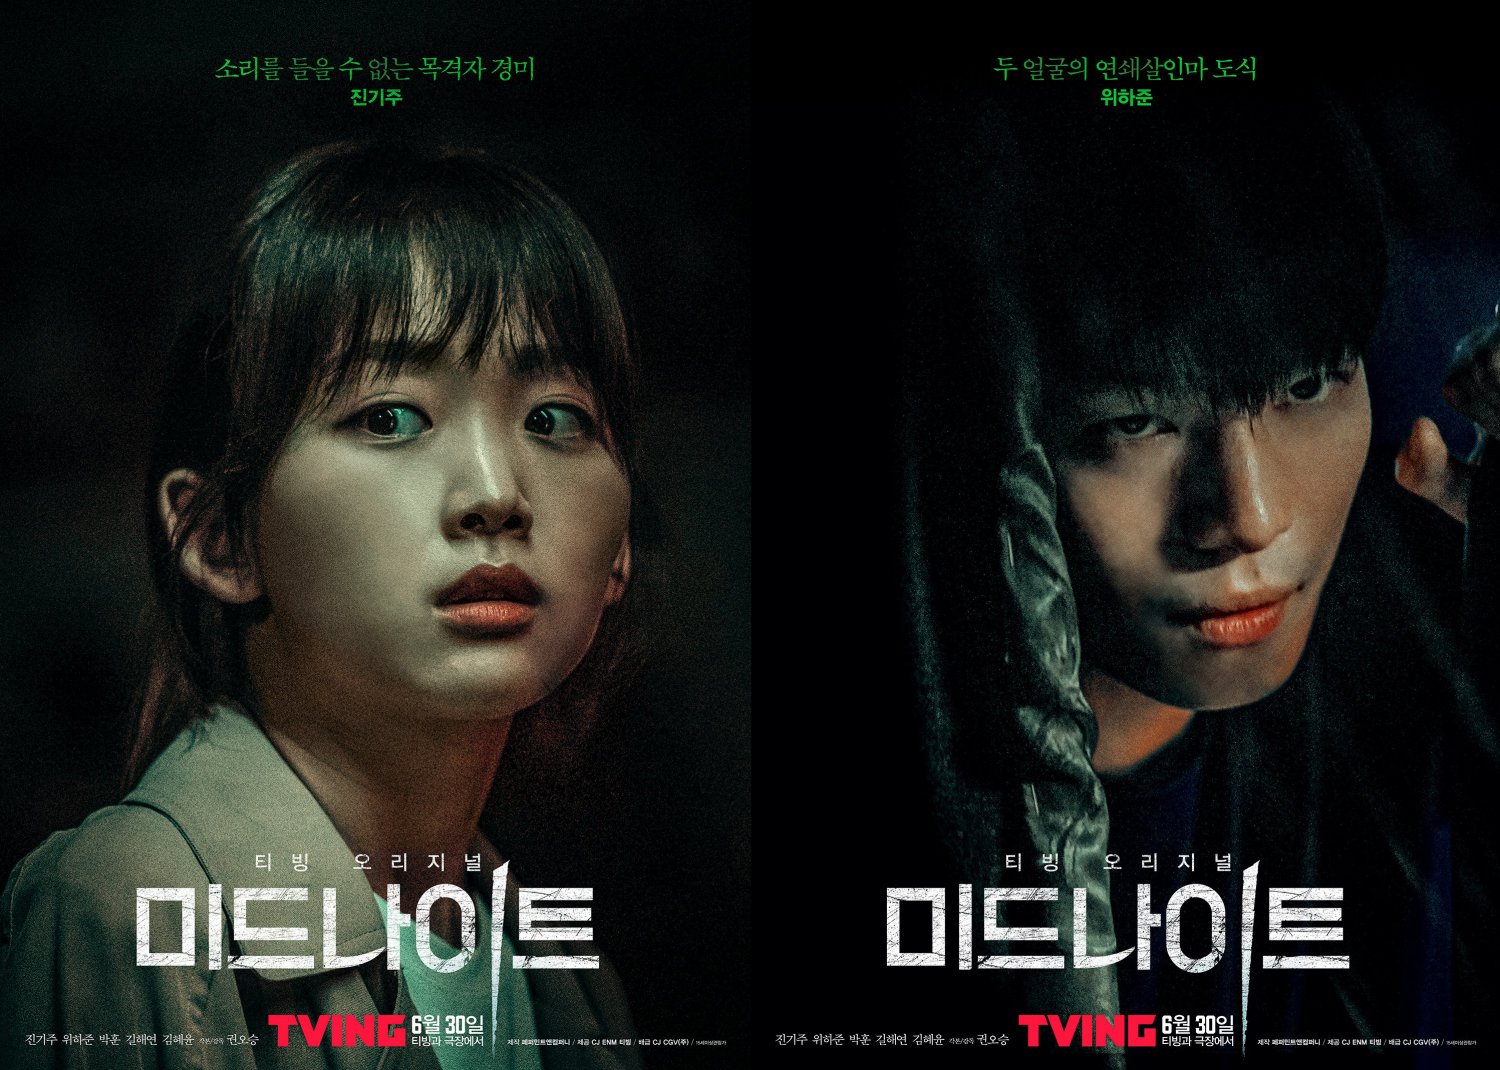 Midnight - Tiếng “Kêu” Cứu Lúc Nửa Đêm - Phim kinh dị tâm lý tội phạm giật gân Hàn Quốc 